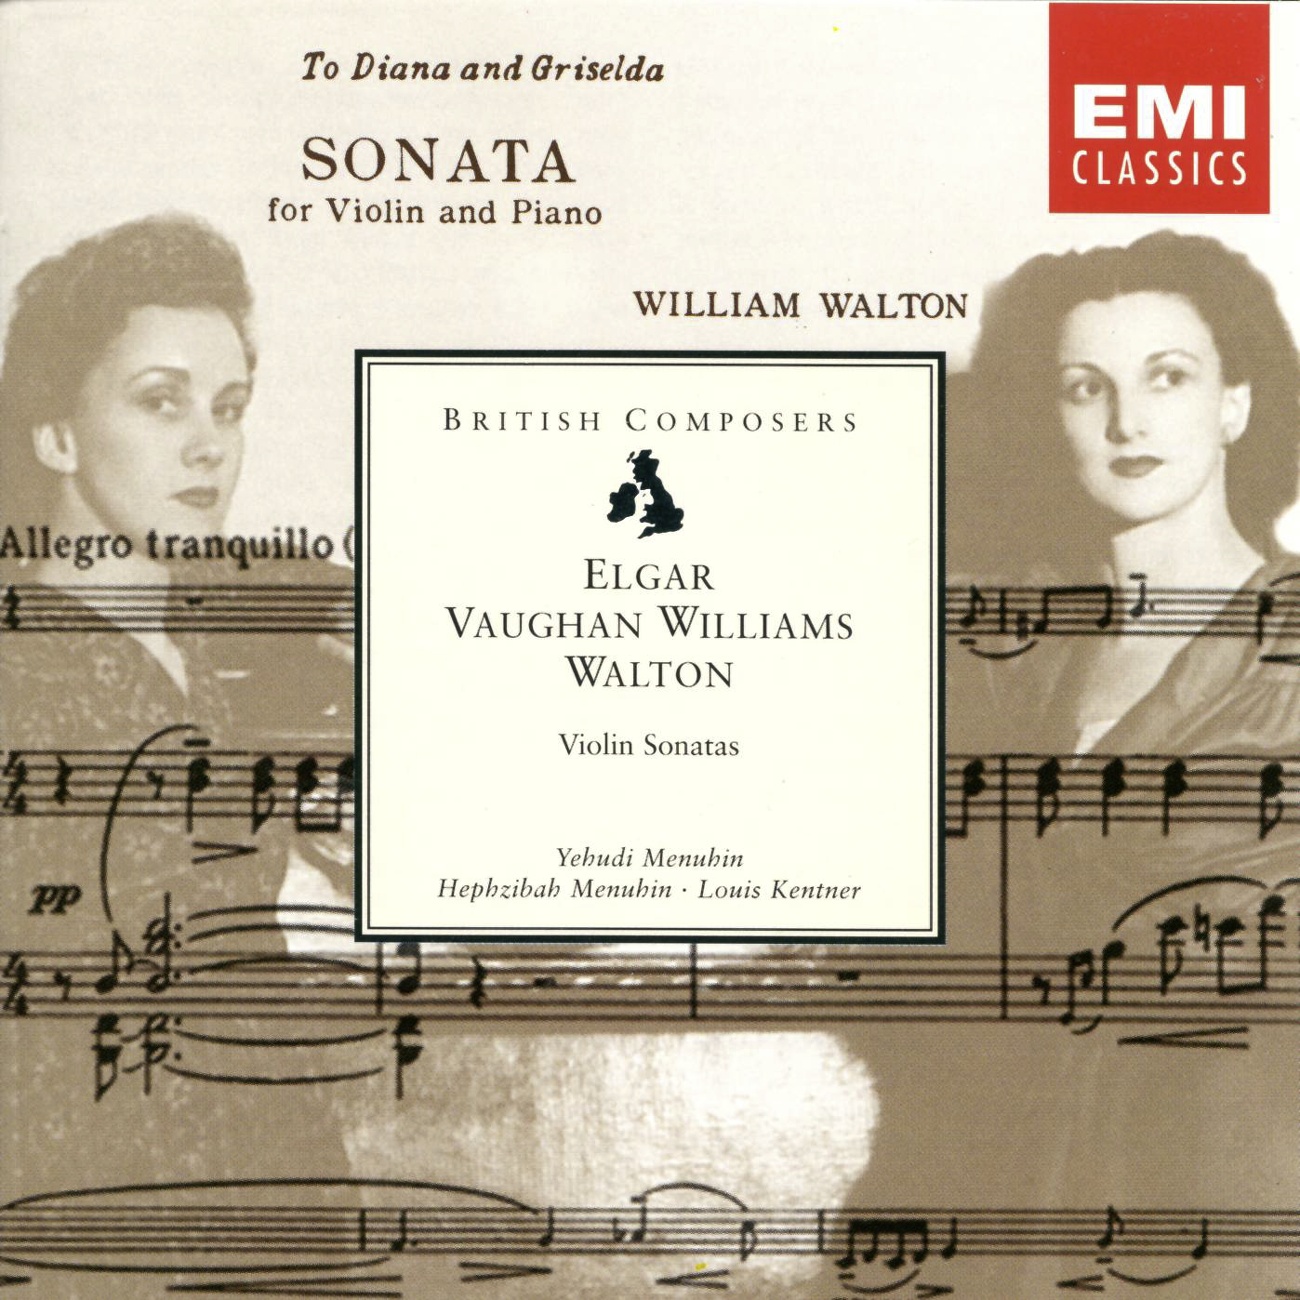 Variation IV (Violin Sonata, Movement 2e)